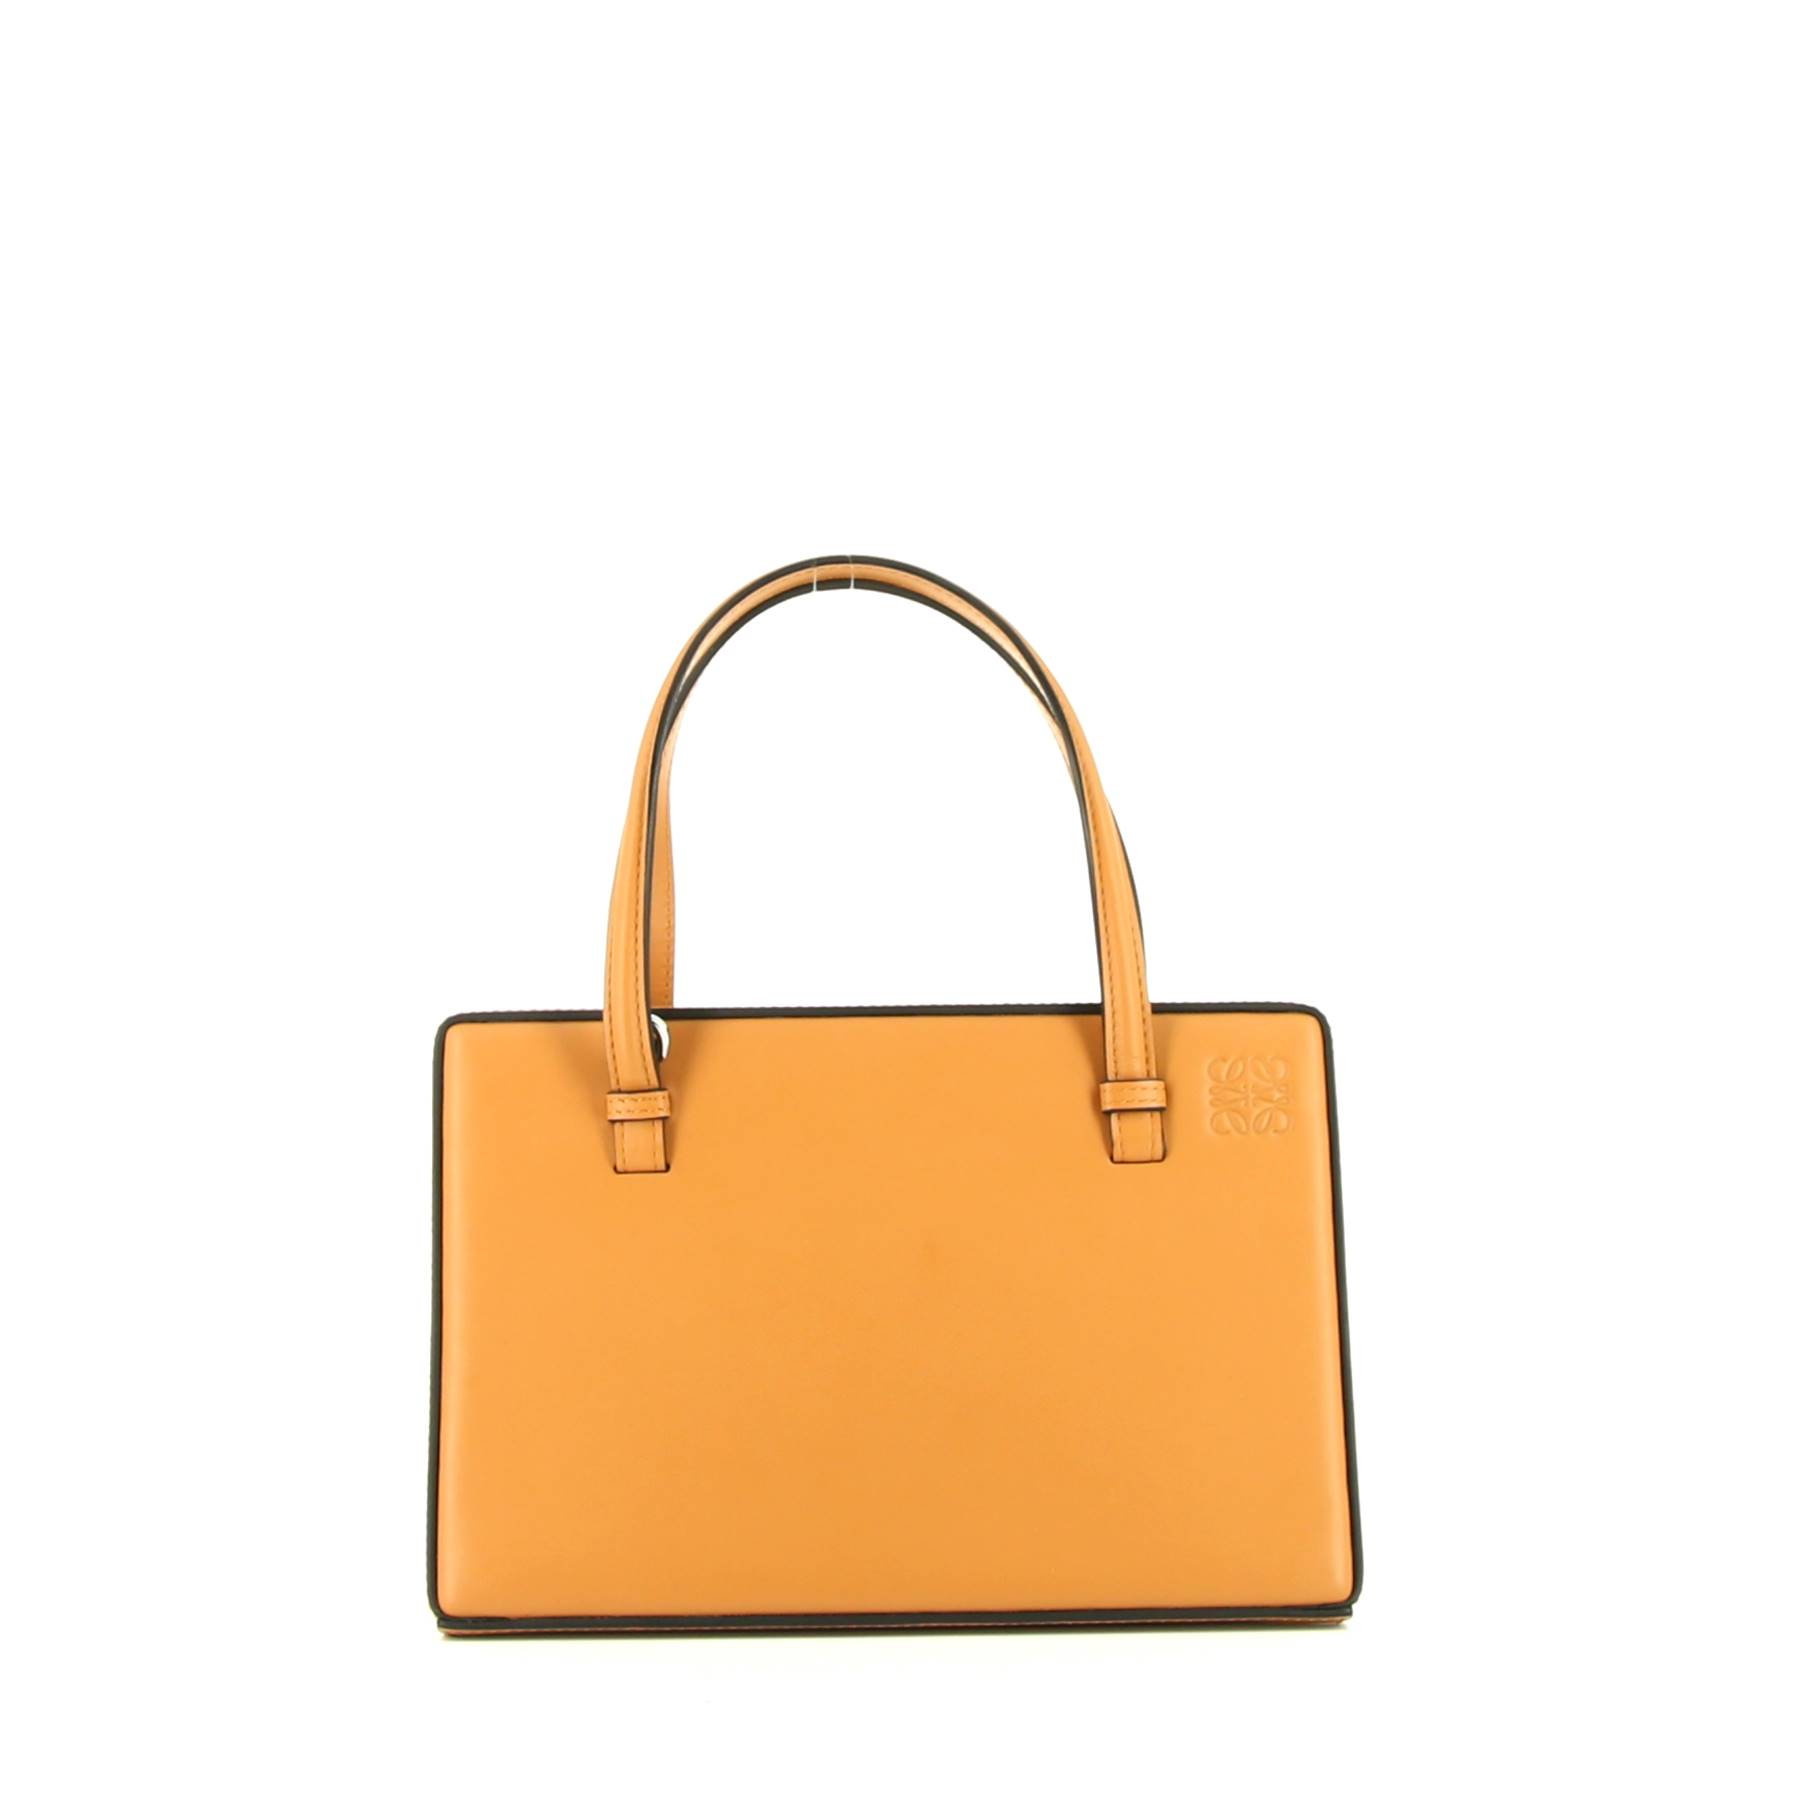 Postal Bag Handbag In Gold Leather